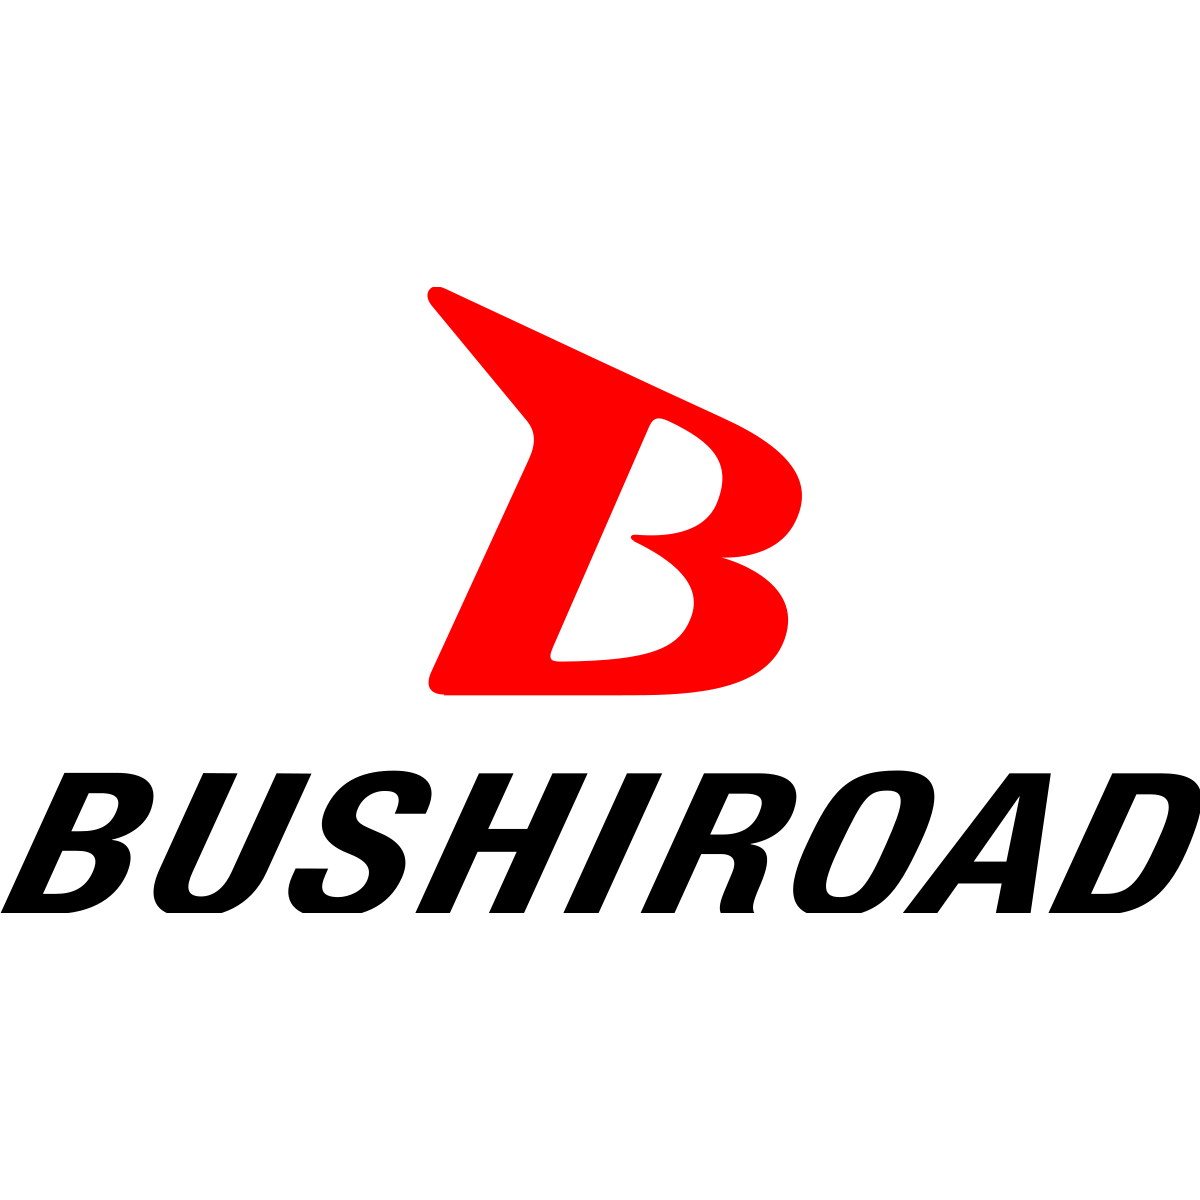 Bushiroad Sleeve Collection - Oshi No Ko - (Vol.3785)-Bushiroad-Ace Cards & Collectibles